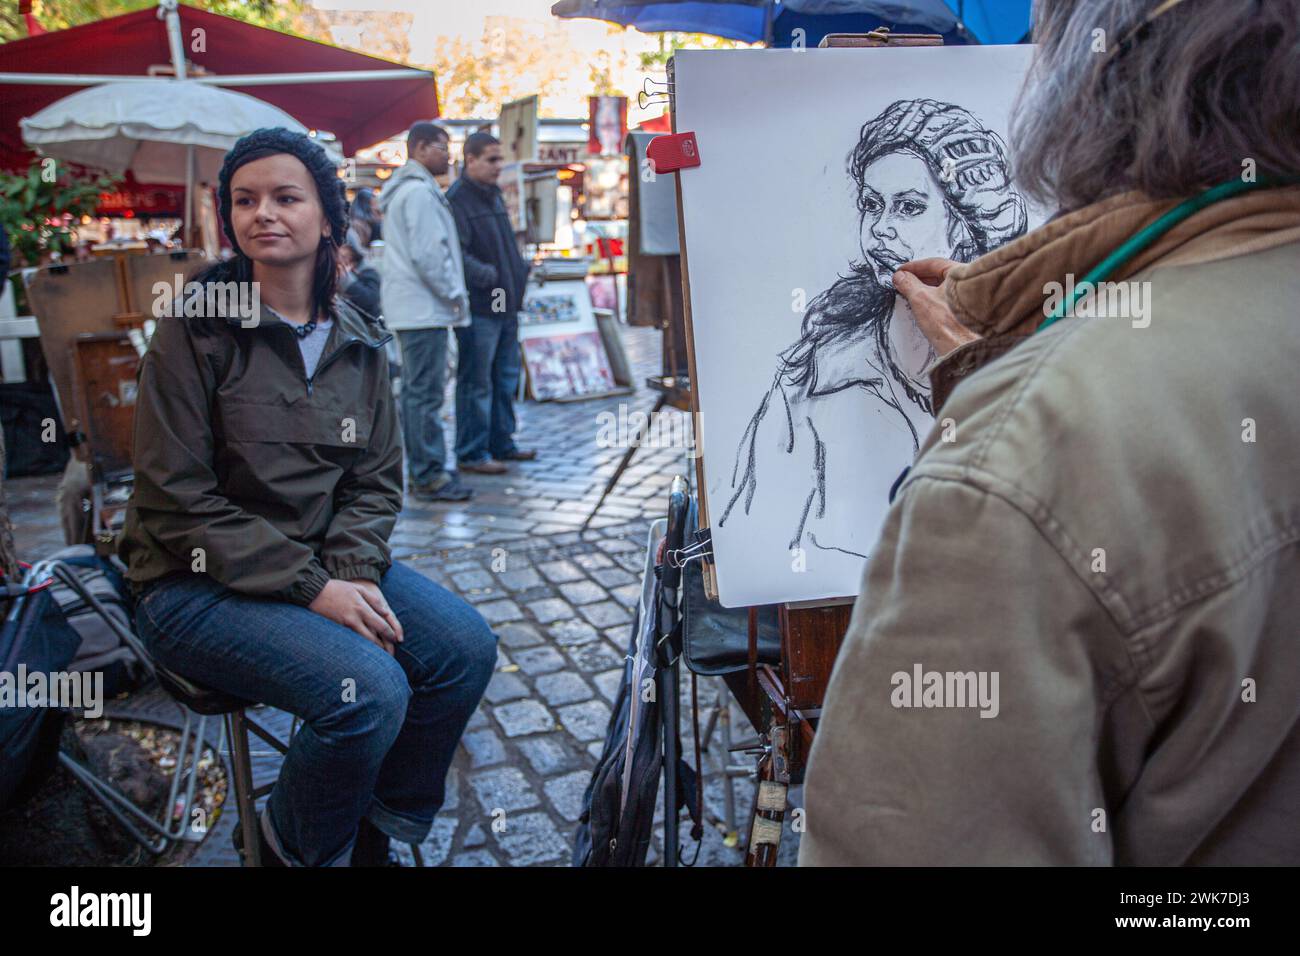 Un pintor está dibujando a una joven en la Place du Tertre, la famosa plaza de artistas y atracción turística en Montmartre, París. Foto de stock